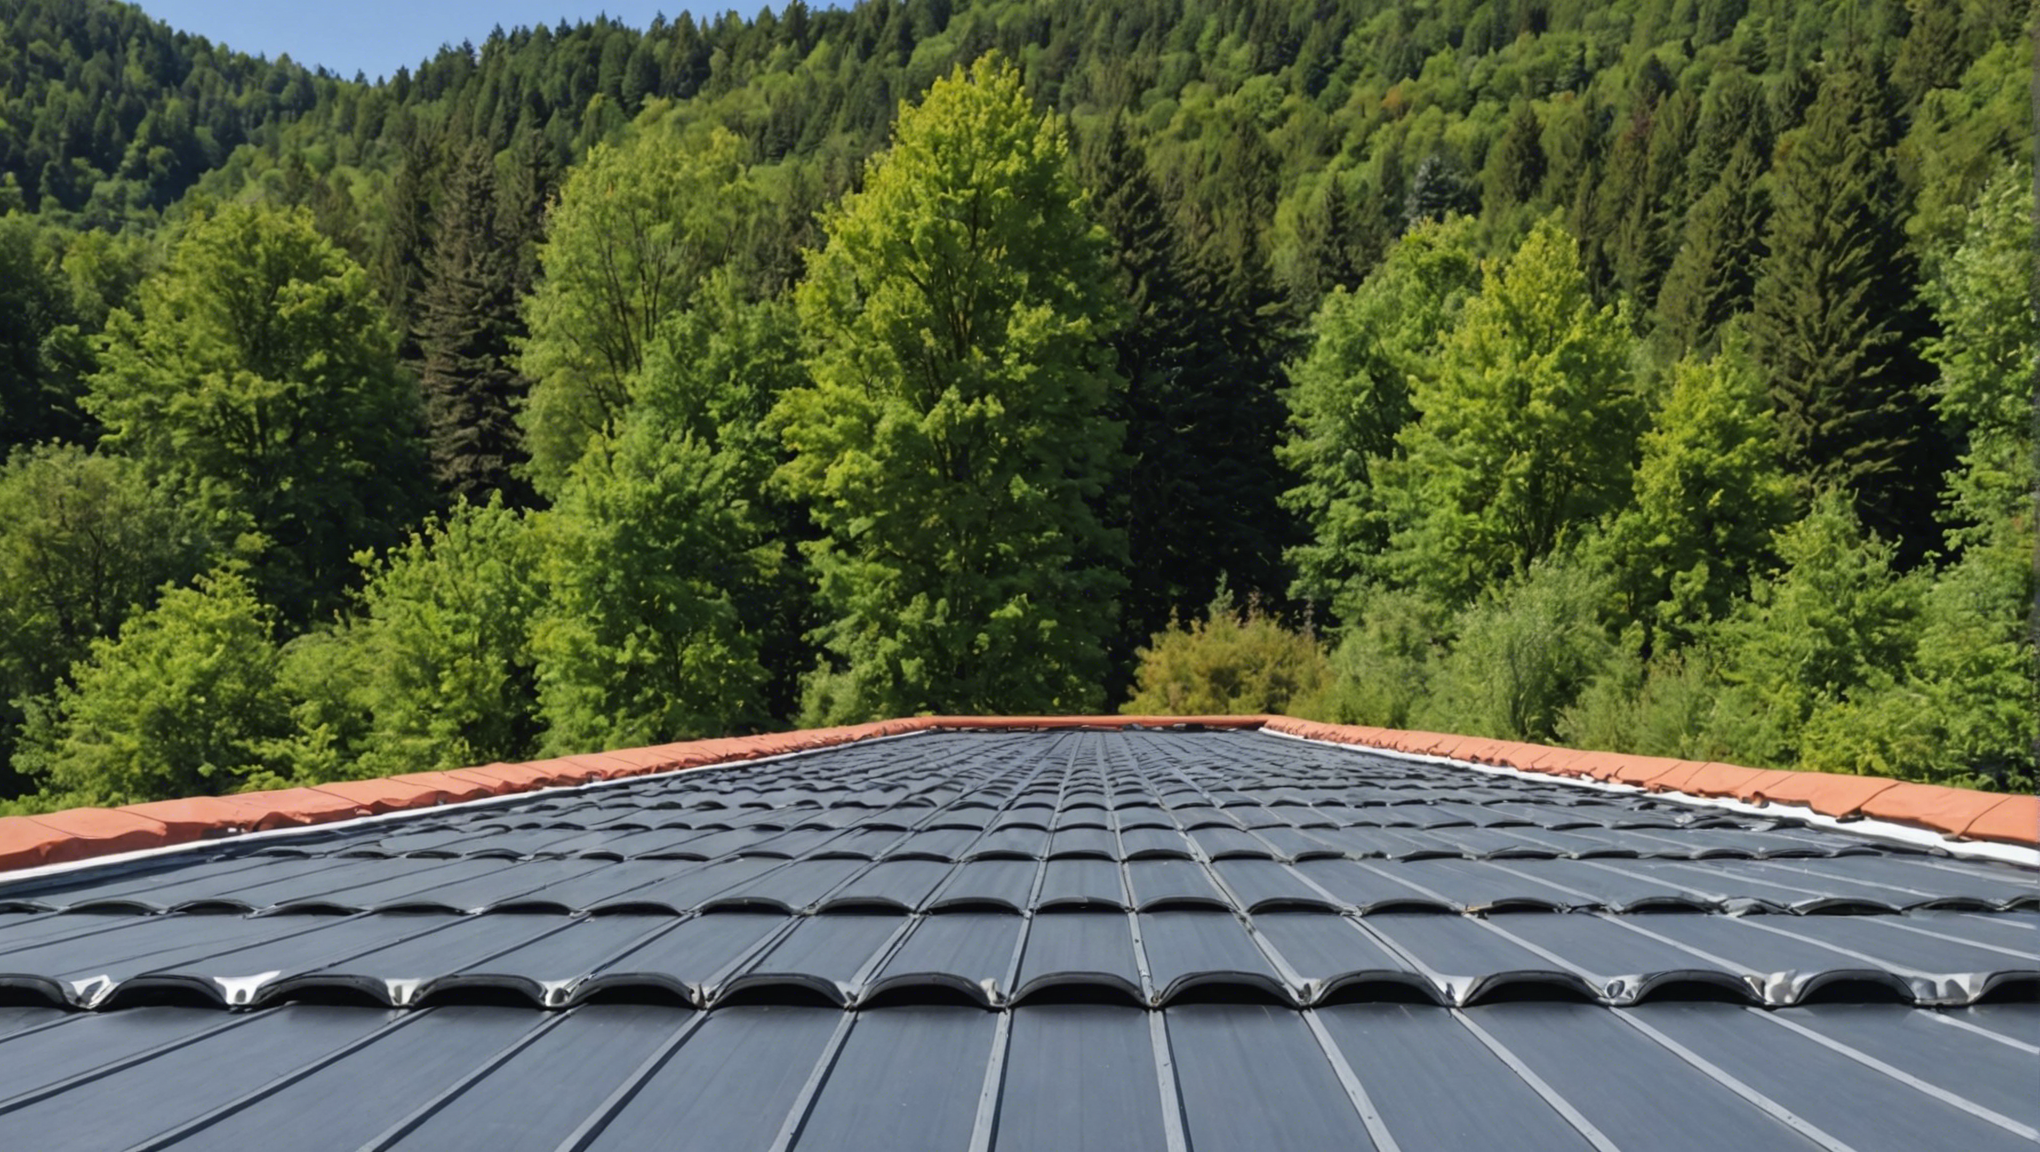 découvrez l'importance de l'isolation de toiture avec ursa france et profitez d'une expertise reconnue dans le domaine pour des performances optimales.